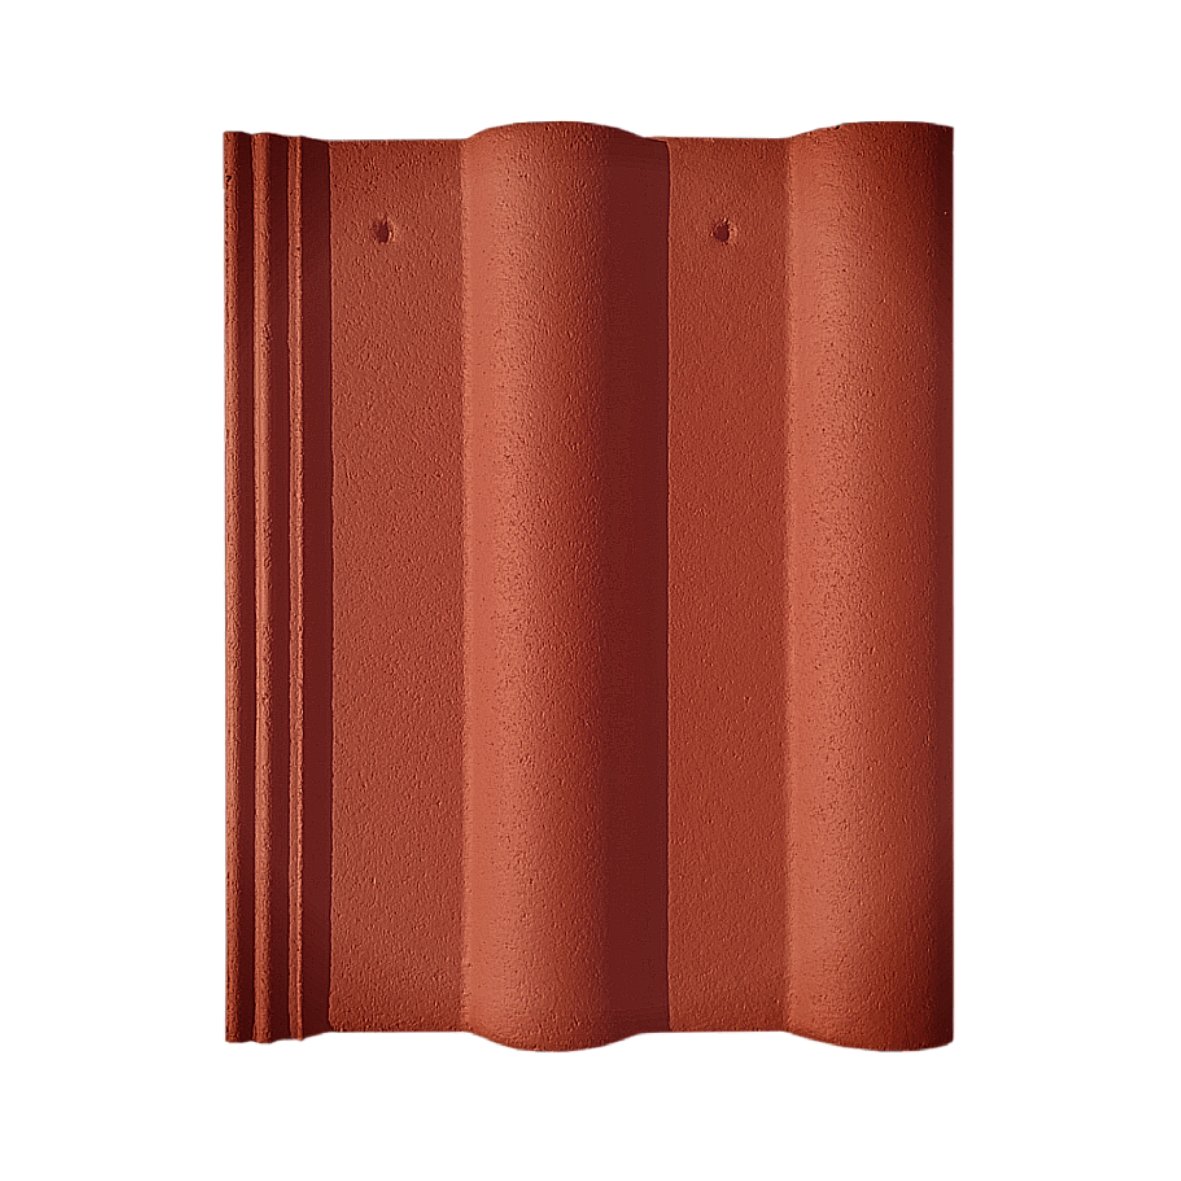 Tigla beton si accesorii - Tigla de beton Nova Double Roman rosu oxid 420 x 330 mm, https:maxbau.ro